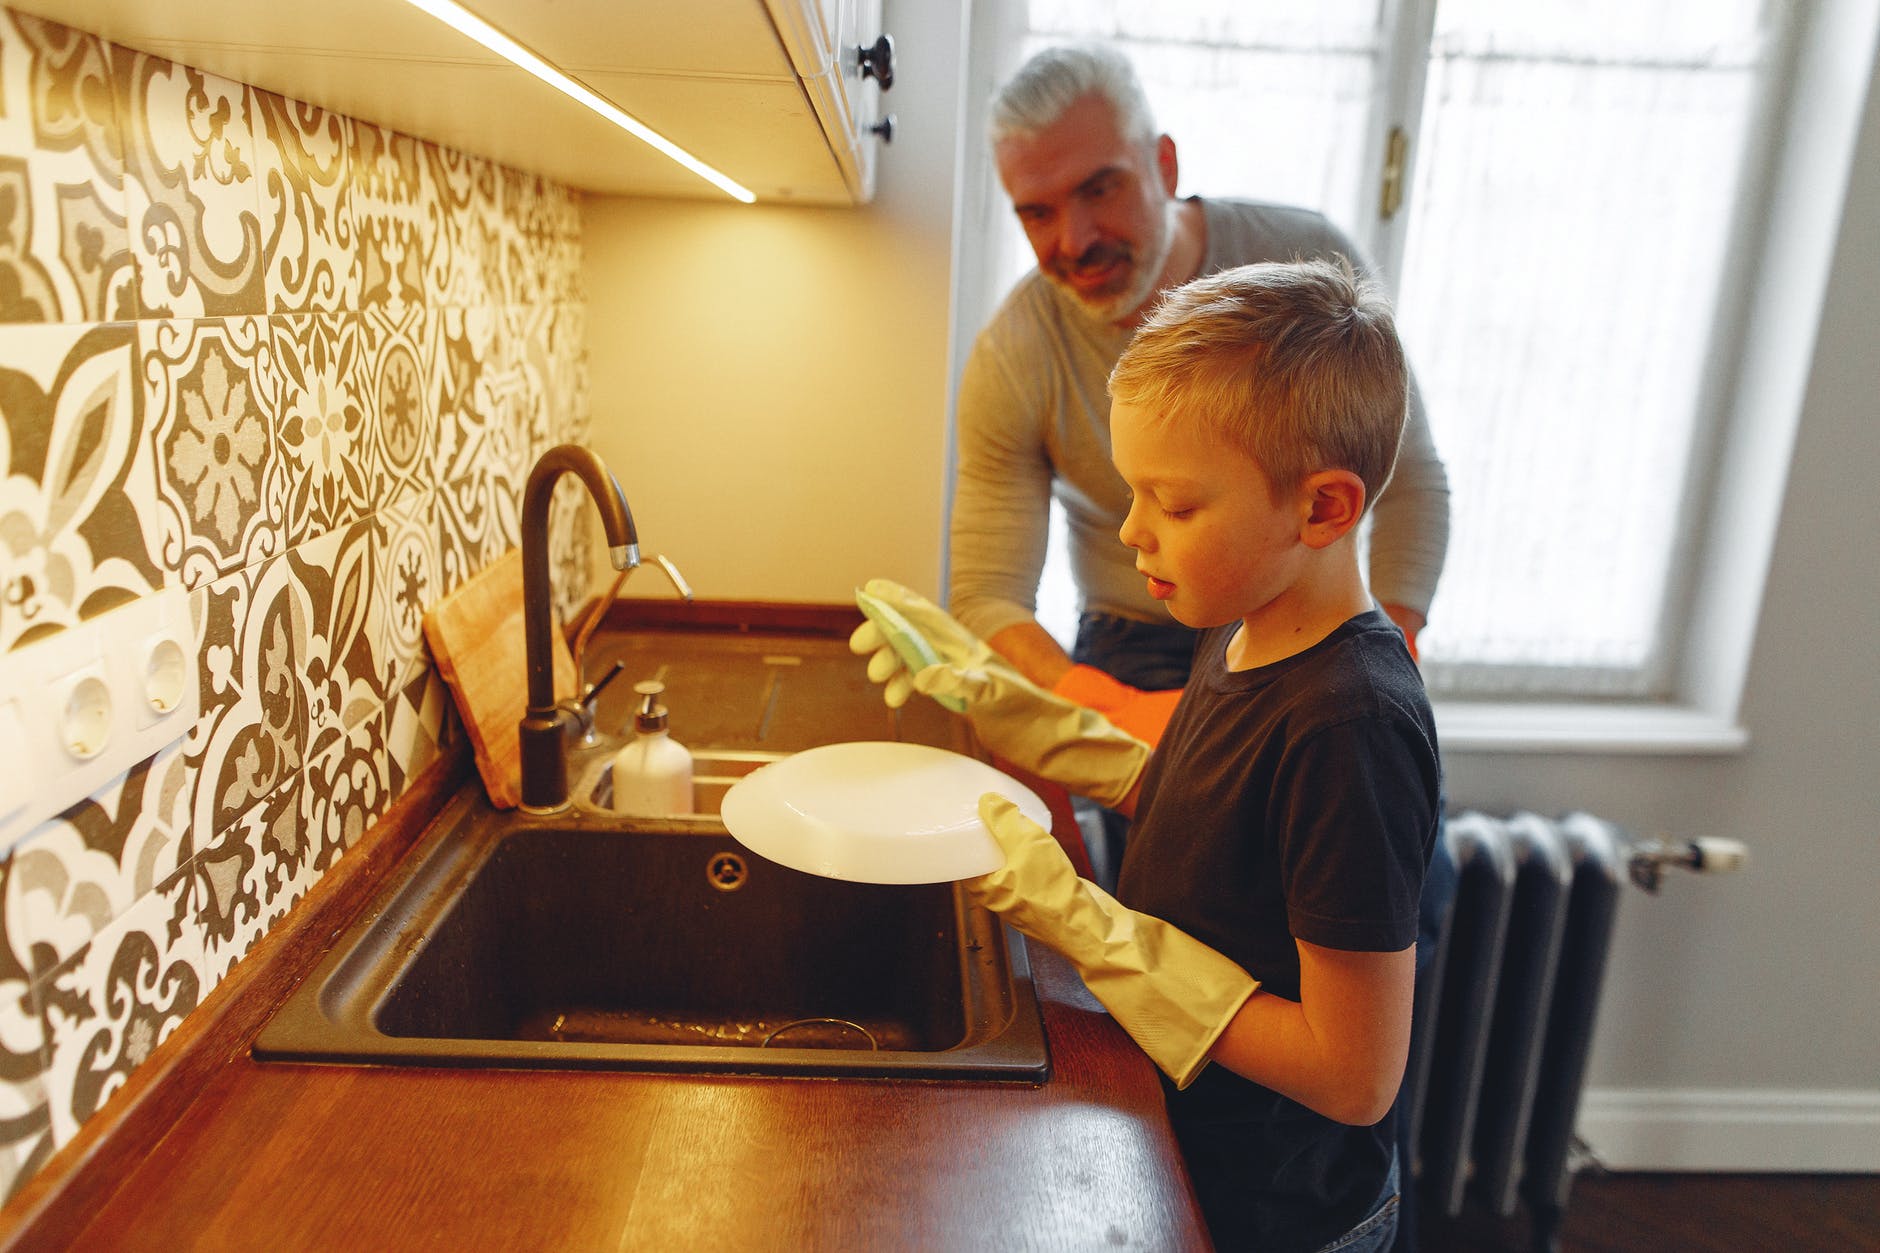 father teaching son dishwashing at kitchen